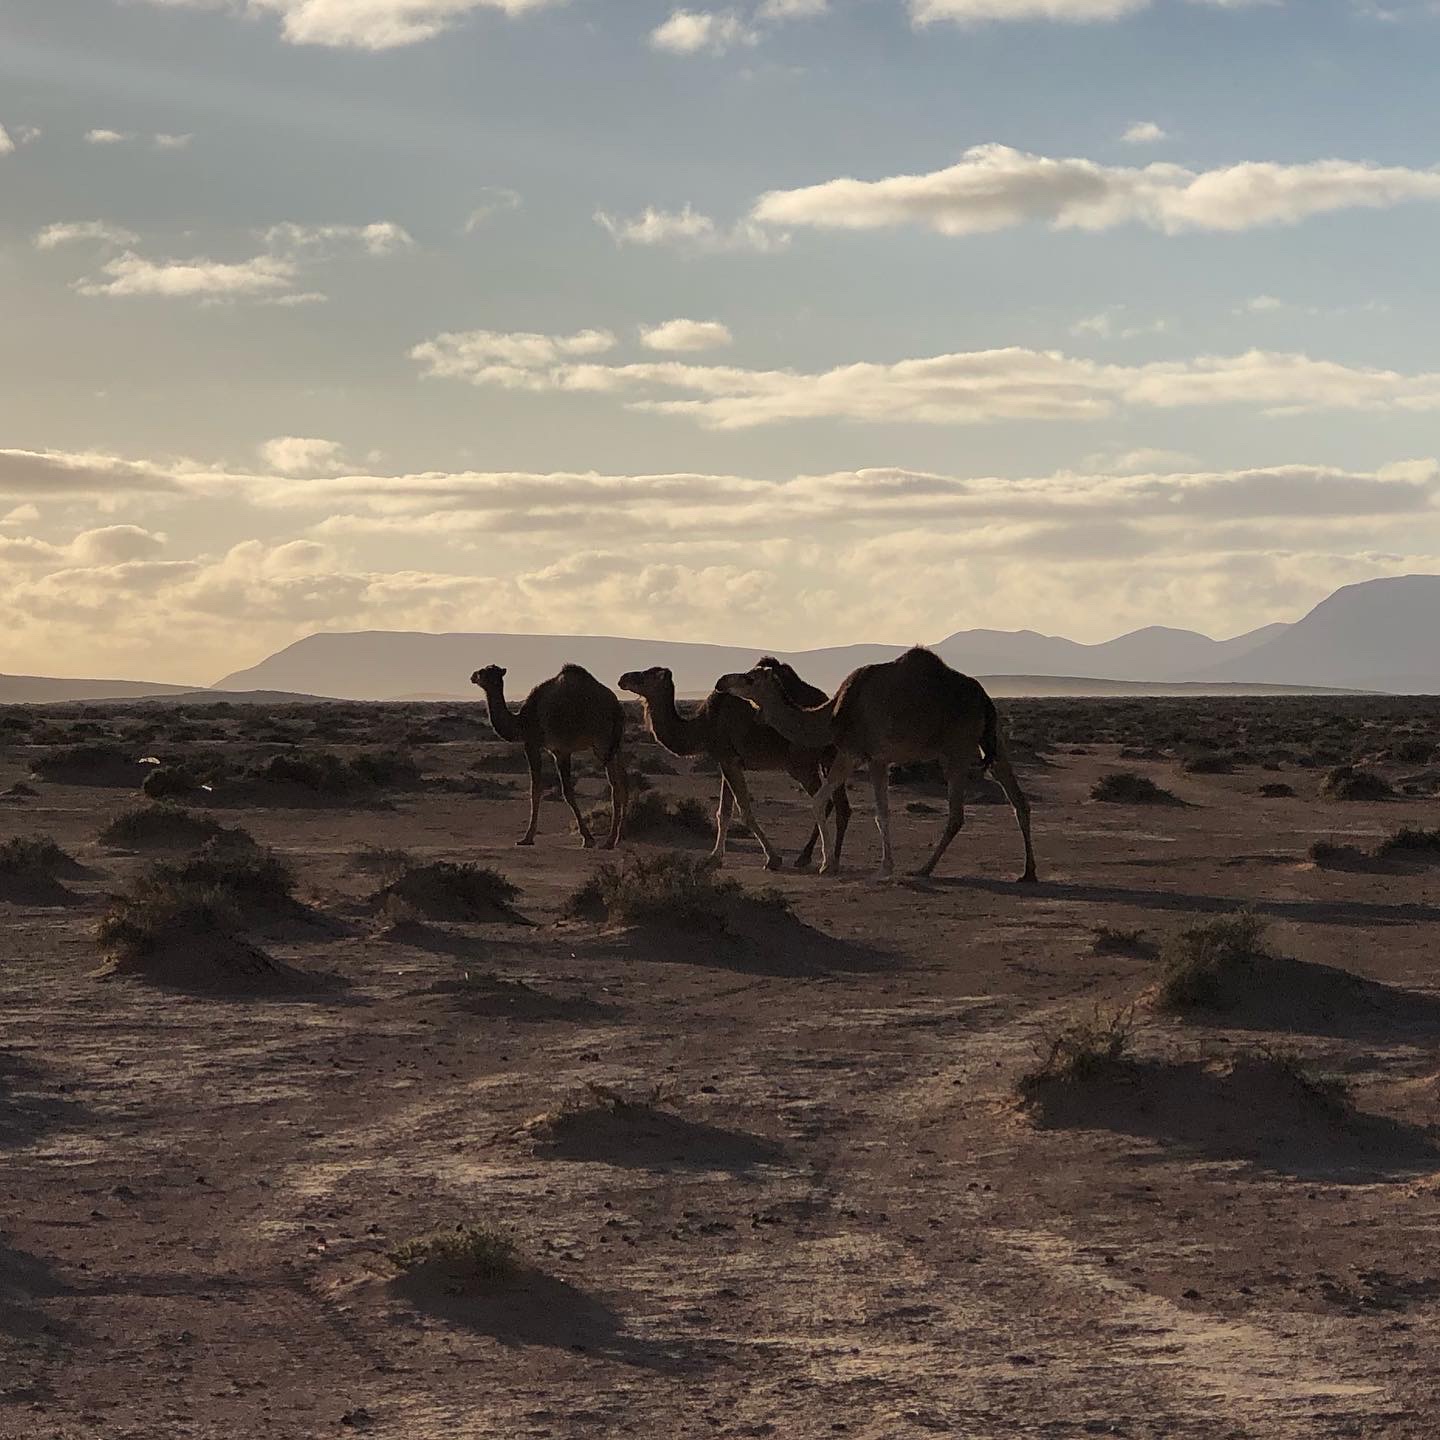 camels walking at hot spring camp 3:2020